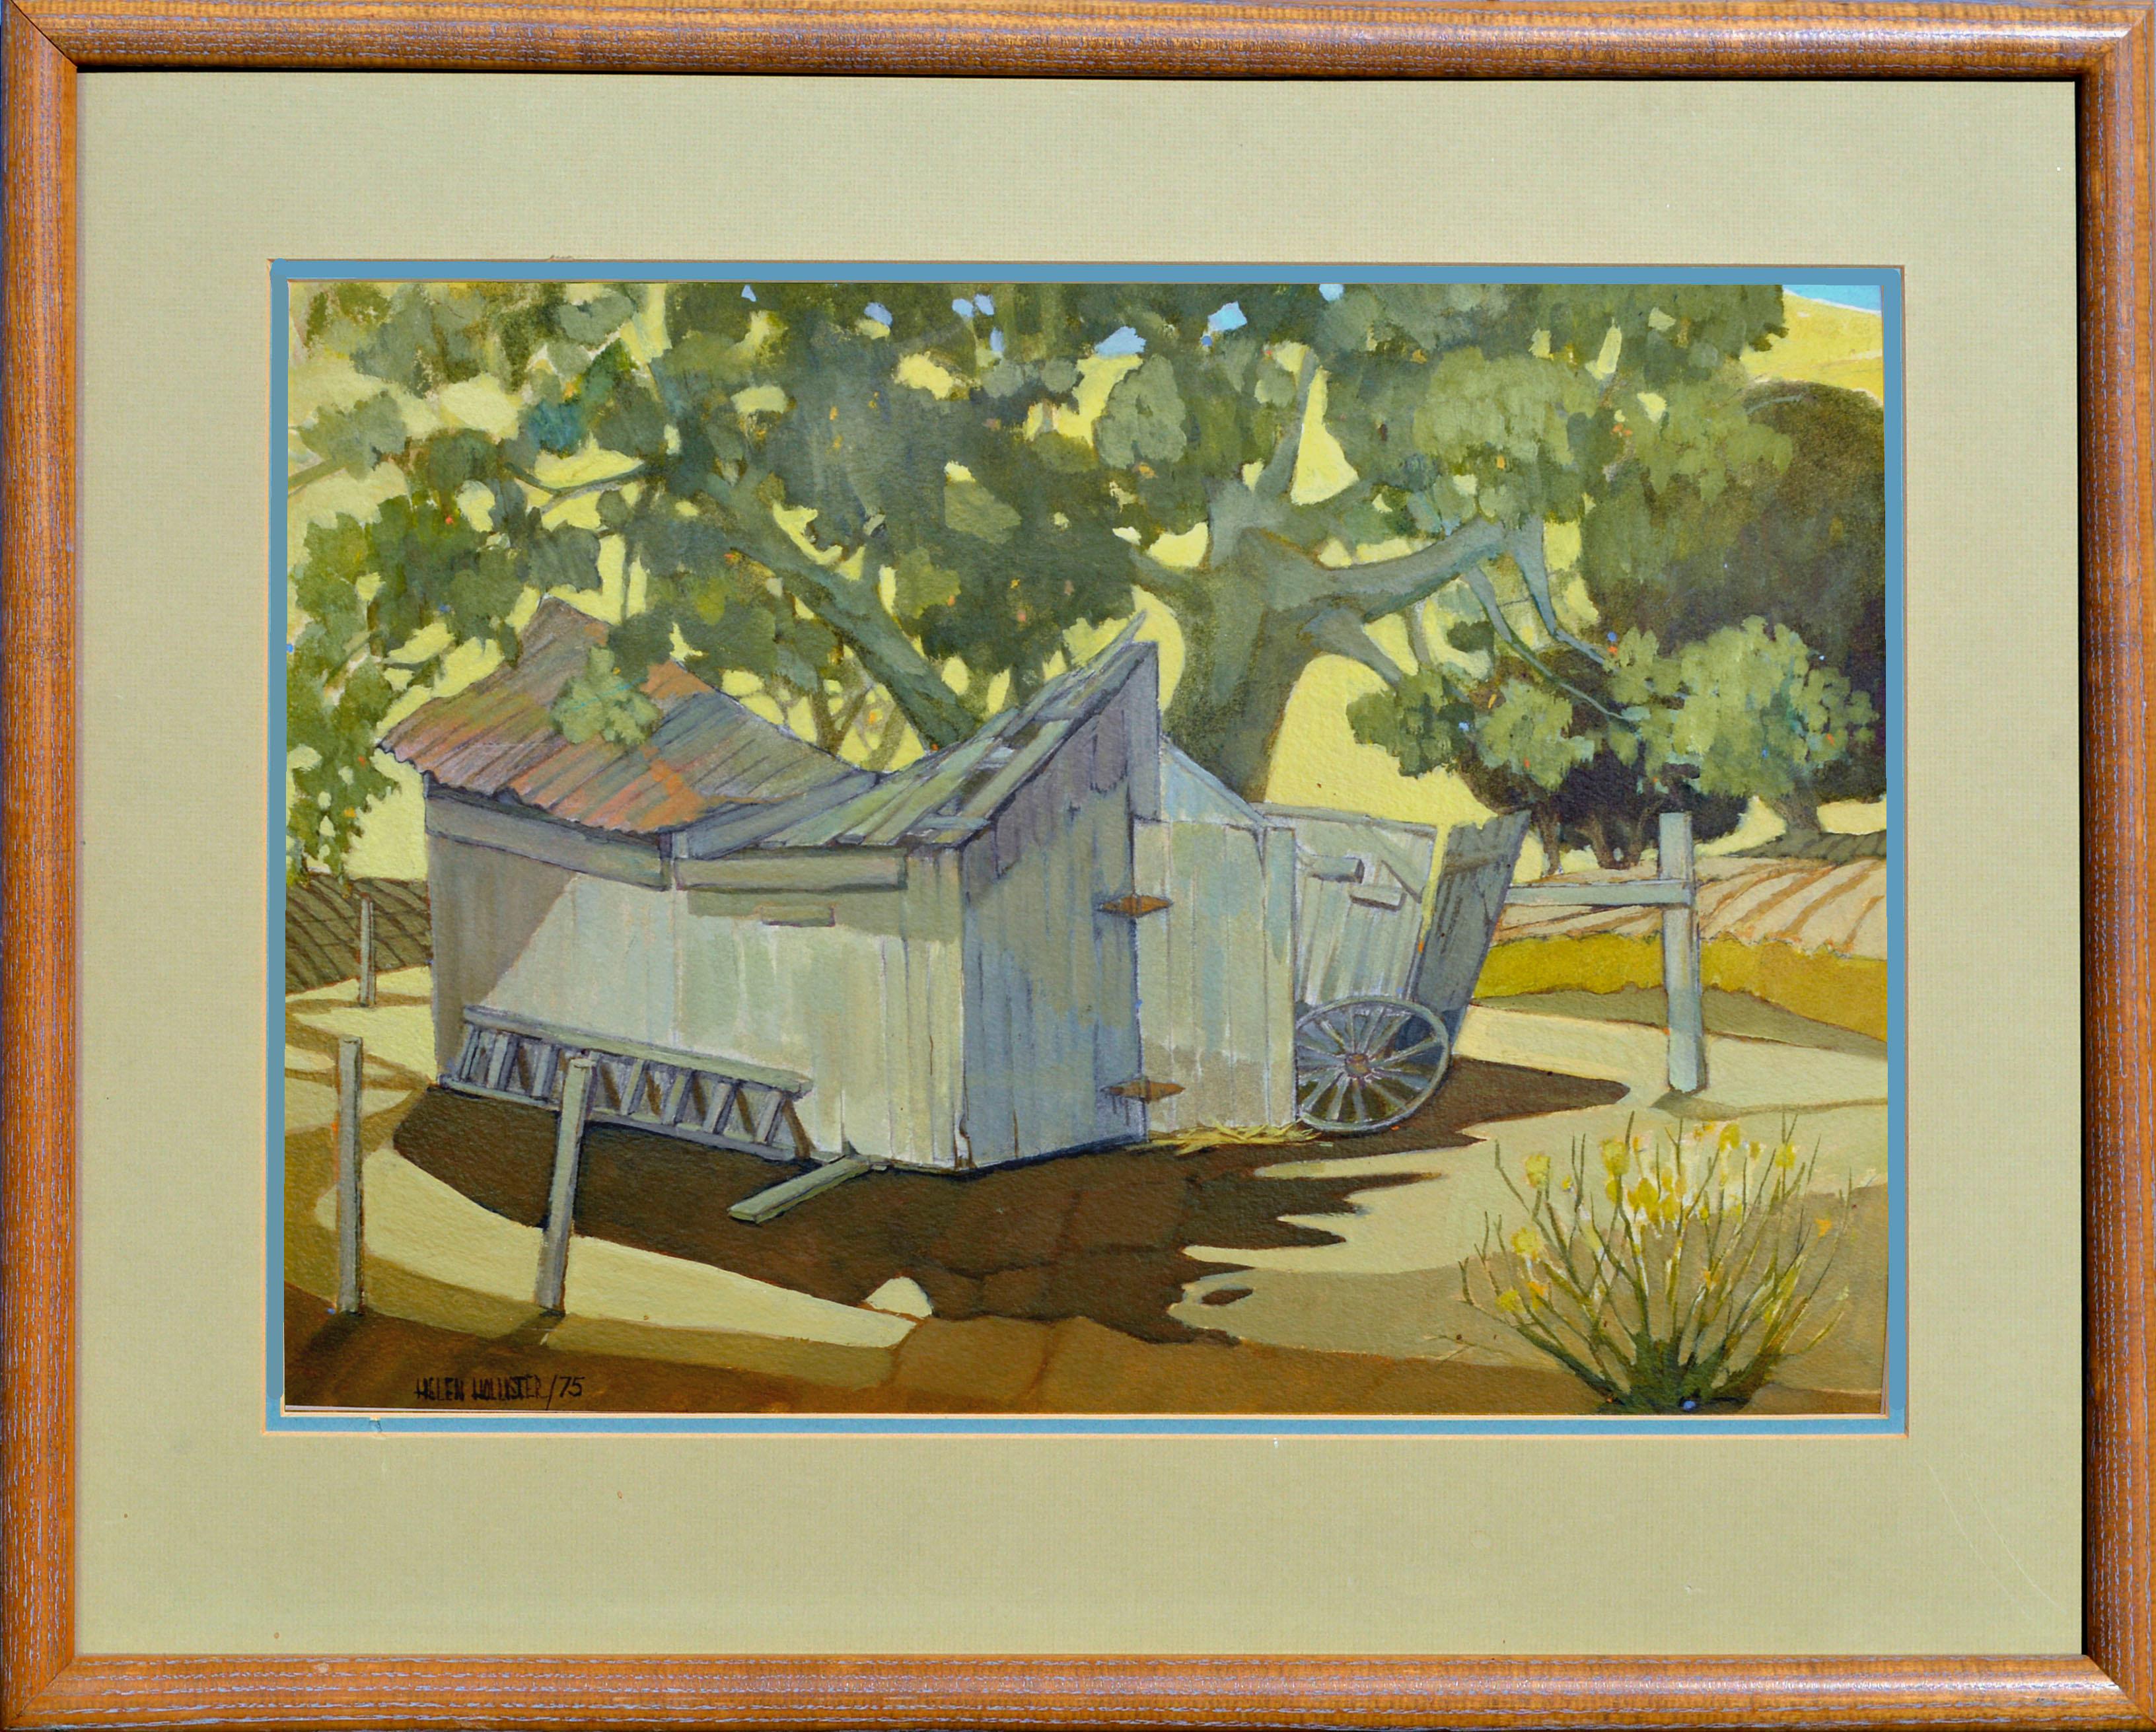 Helen A. Hollister Landscape Painting - "Wagon Shed" - 1970s San Louis Obispo Farm Landscape